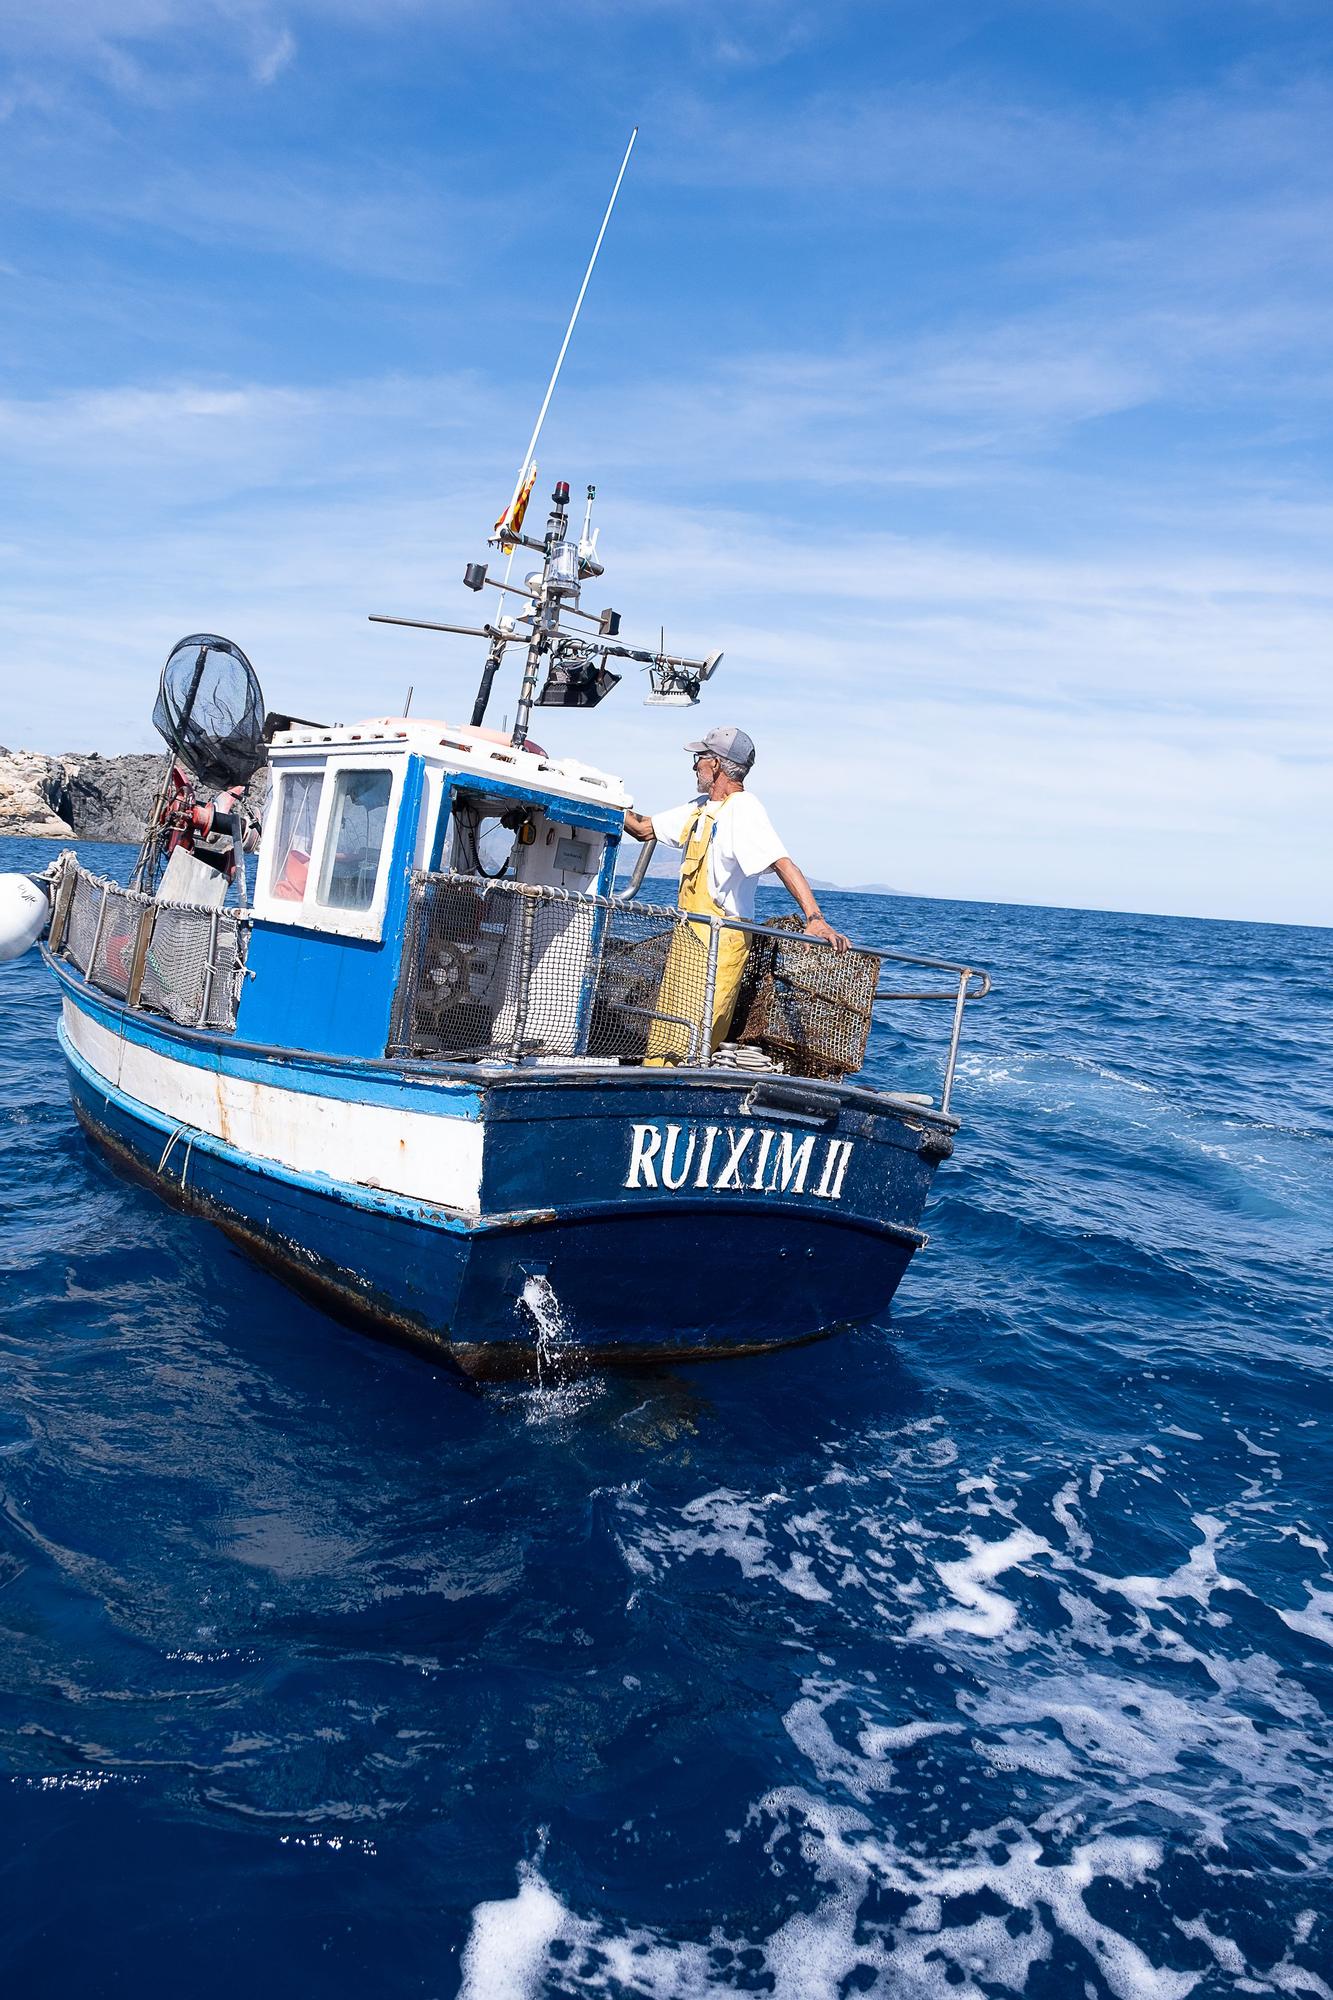 Retiren 700 quilos de residus del fons marí del Port de la Selva